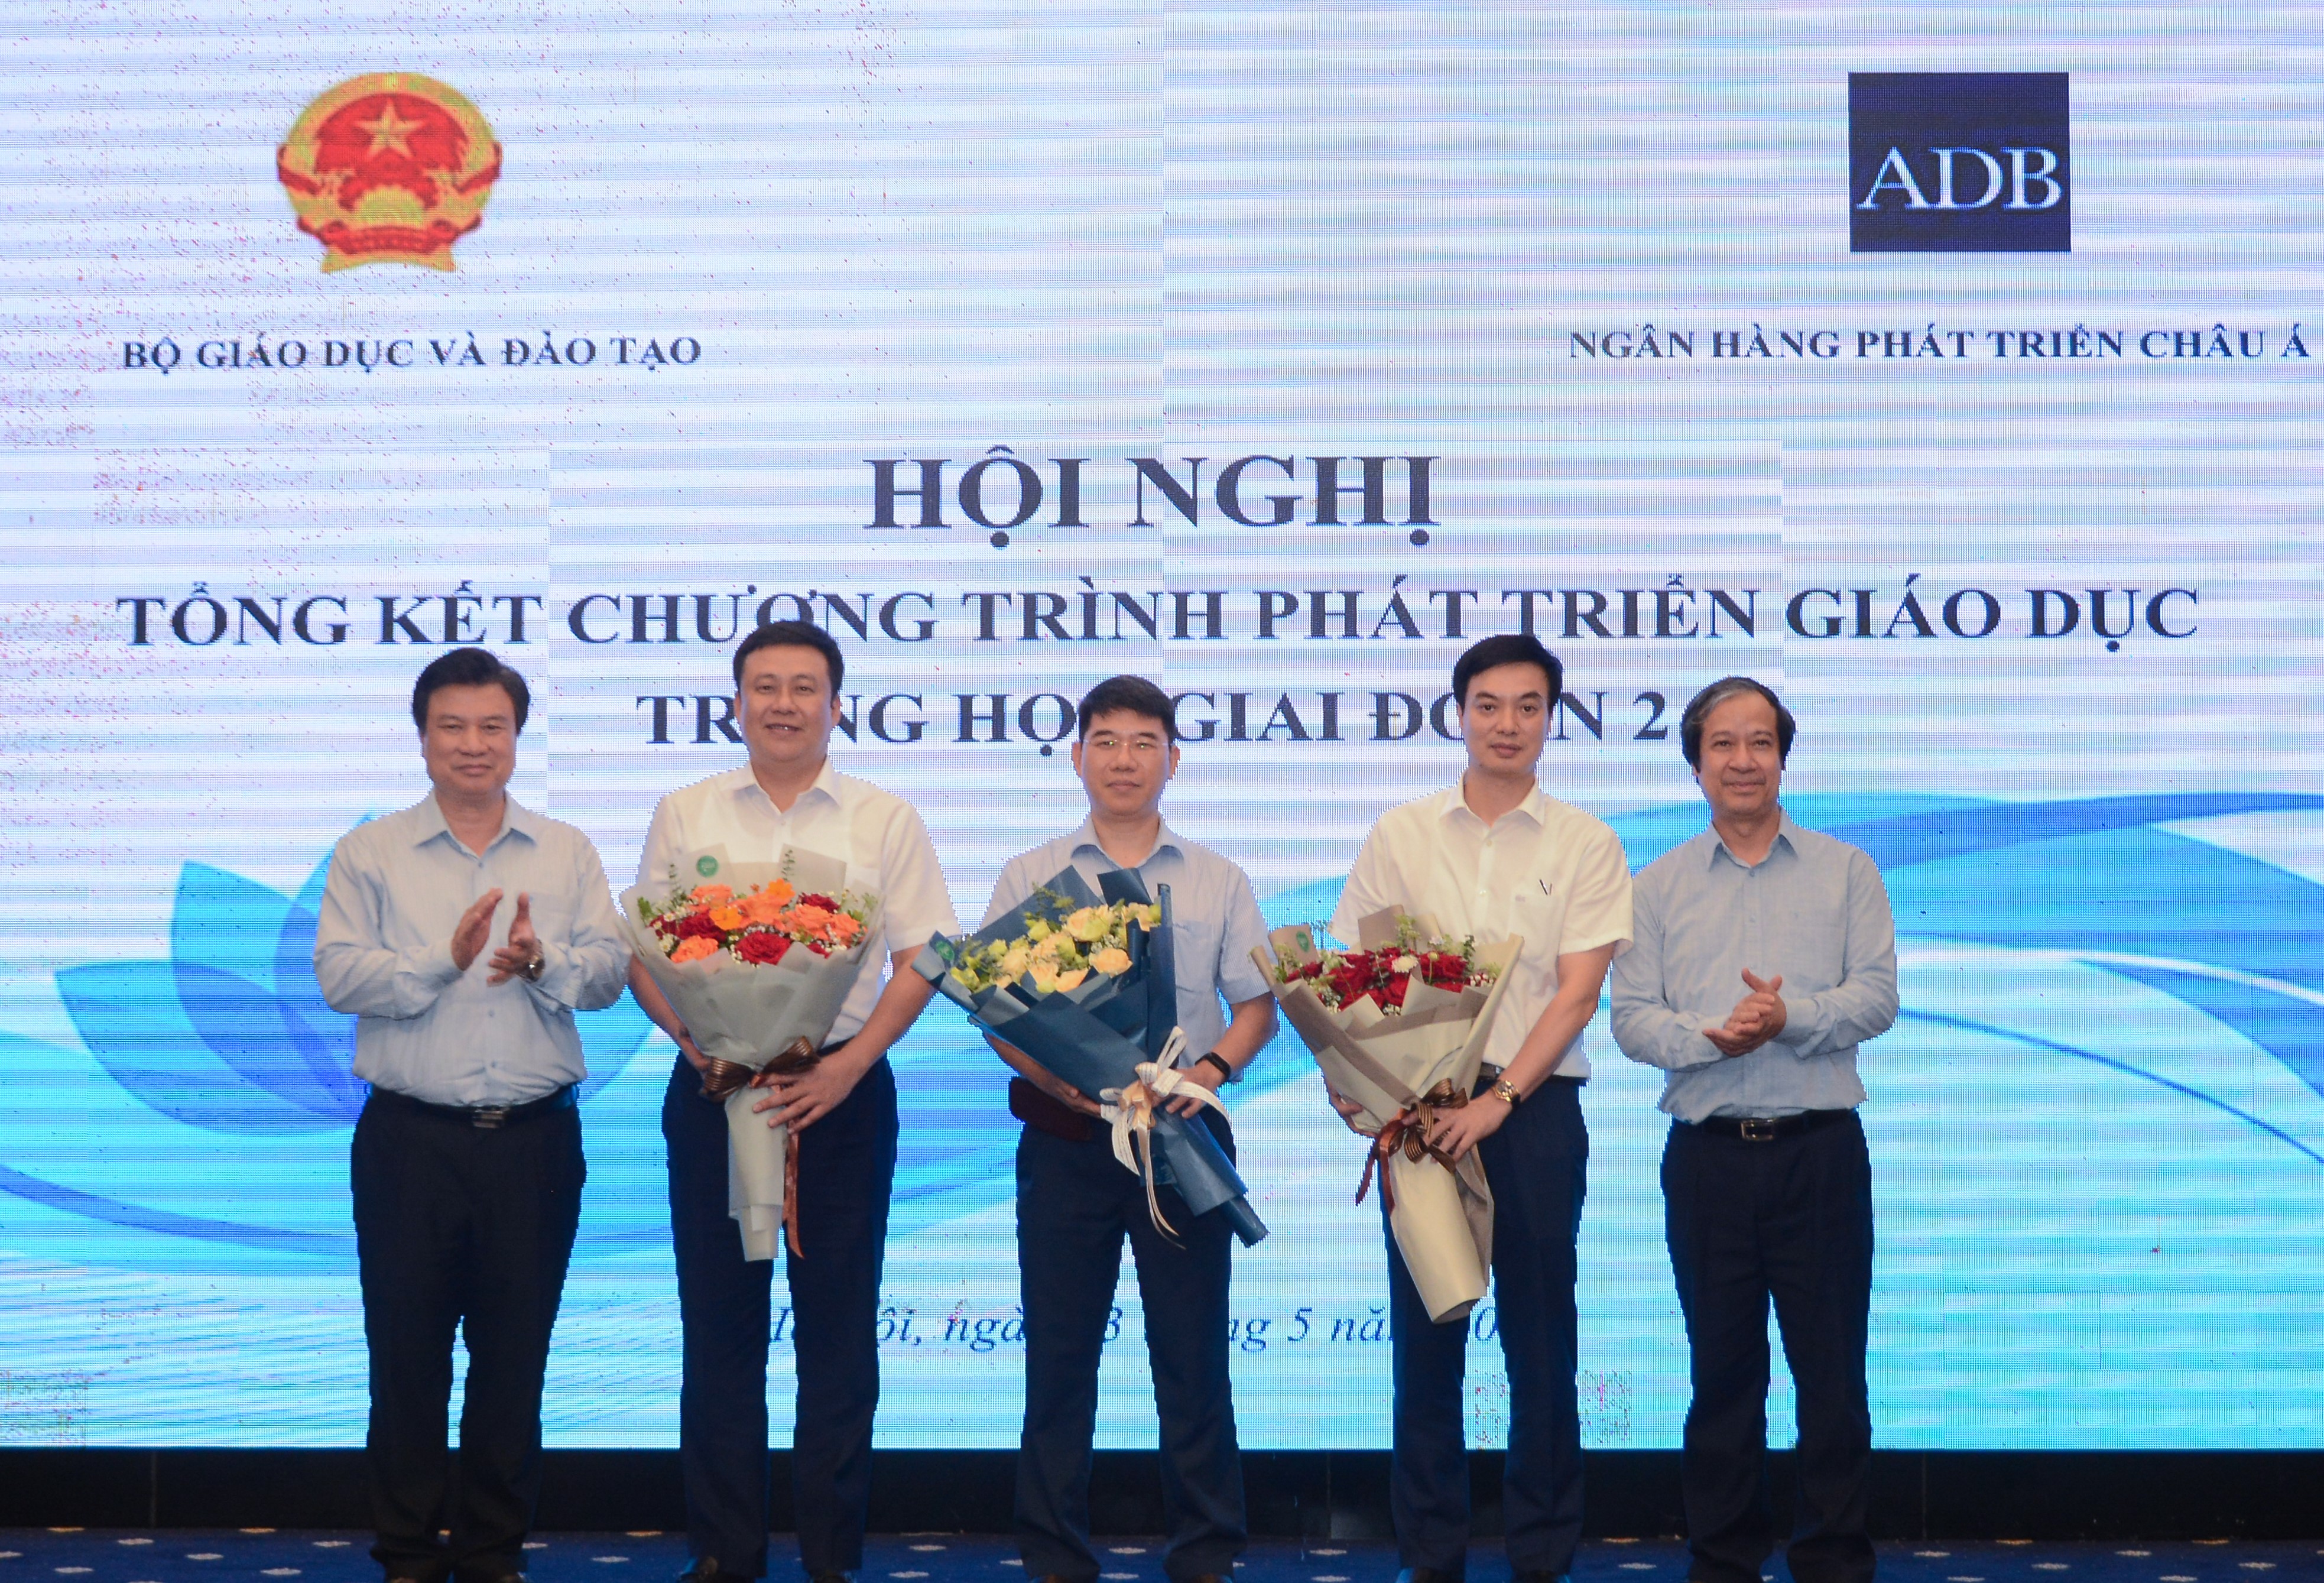 Bộ trưởng Nguyễn Kim Sơn, Thứ trưởng Nguyễn Hữu Độ tặng hoa đại diện Ngân hàng phát triển Châu Á và Ban quản lý Chương trình phát triển giáo dục trung học giai đoạn 2.